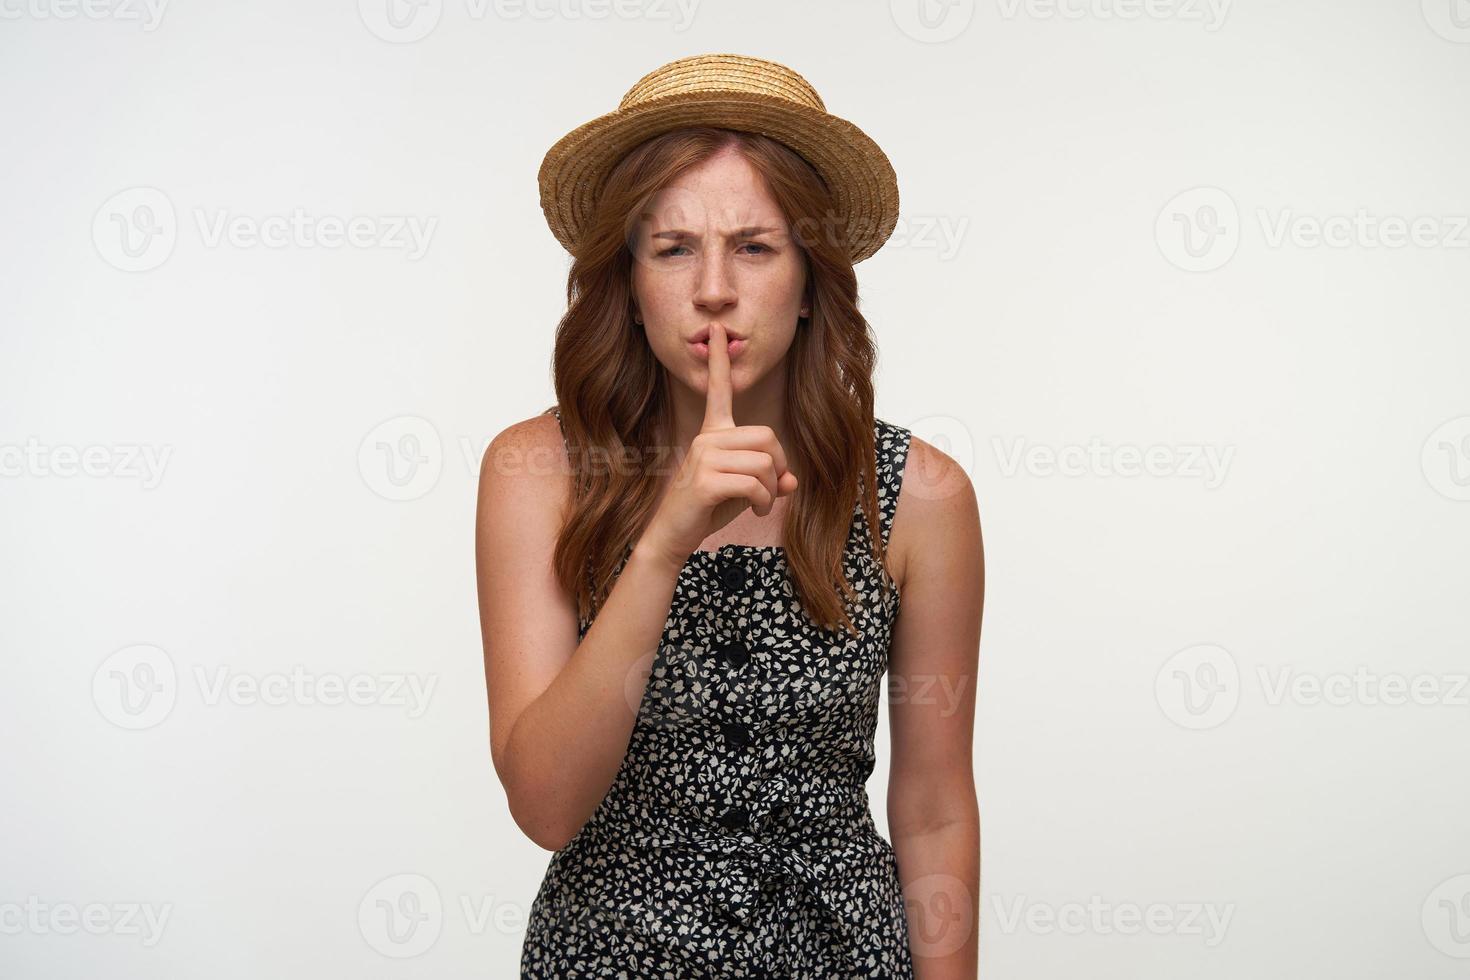 geïrriteerde jonge roodharige vrouw die een vrijetijdskleding en een bootshoed draagt, een stil gebaar maakt, vraagt om stil te zijn, fronst en serieus naar de camera kijkt foto